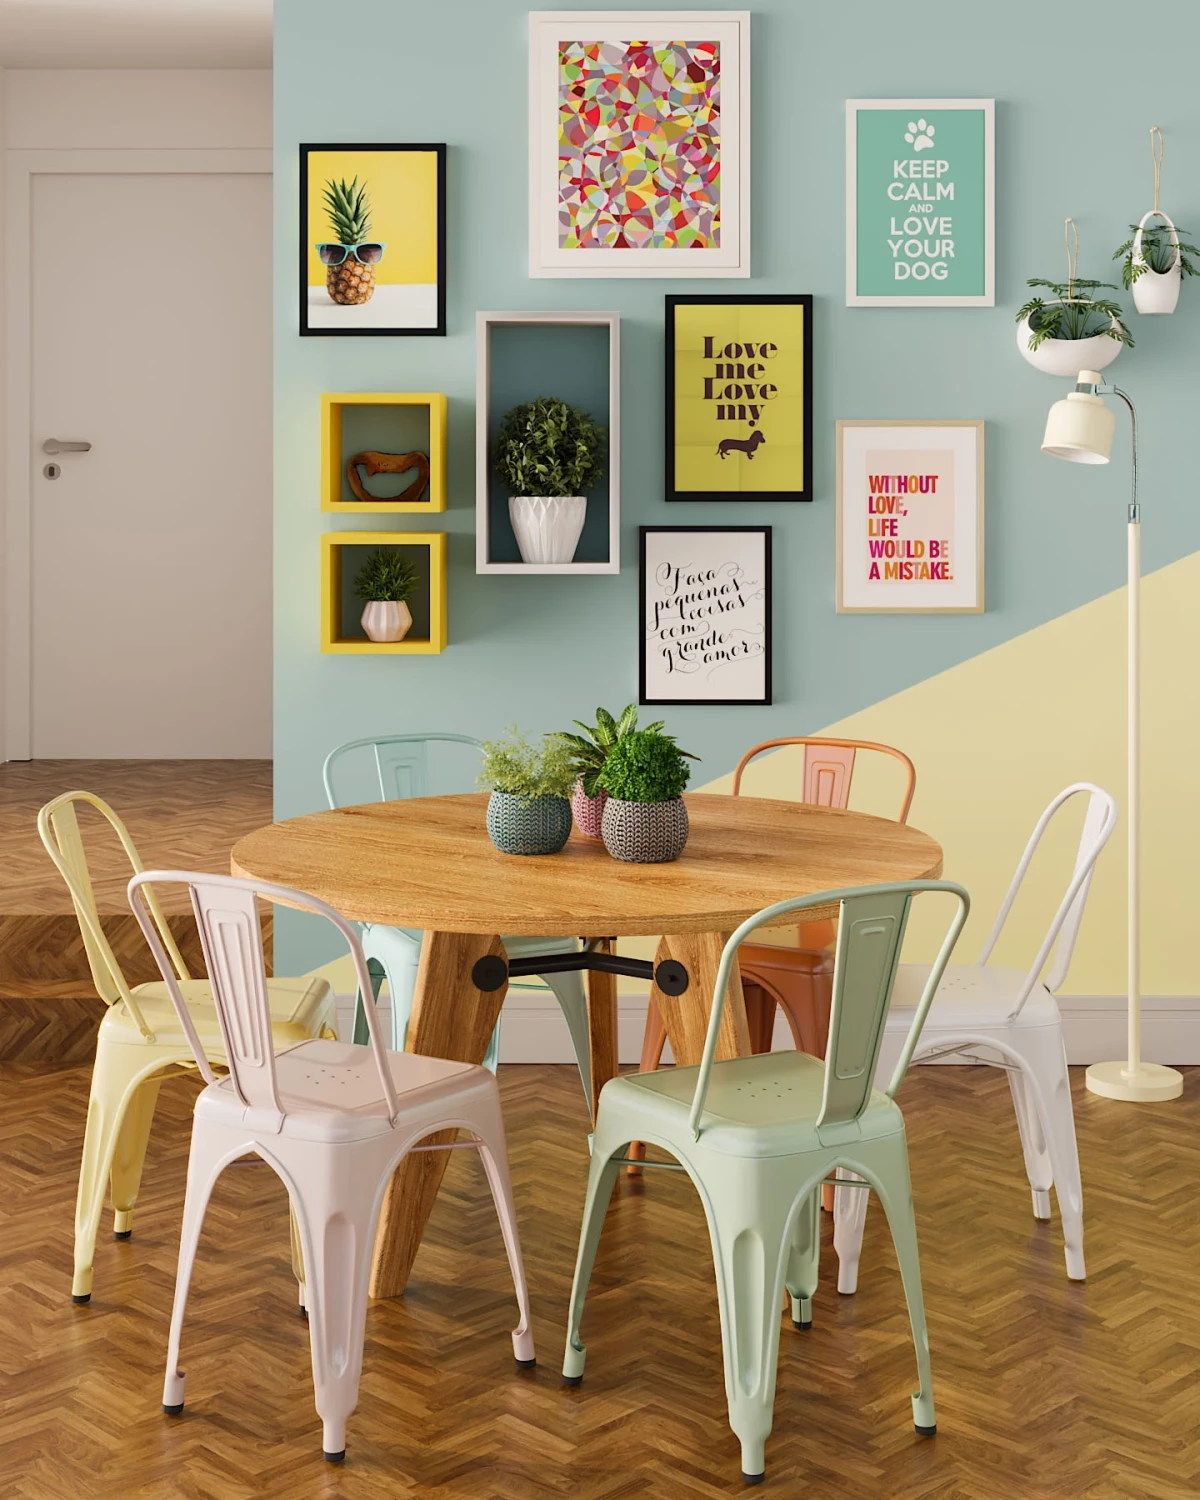 decoration couleur pastels et chaises depareillees